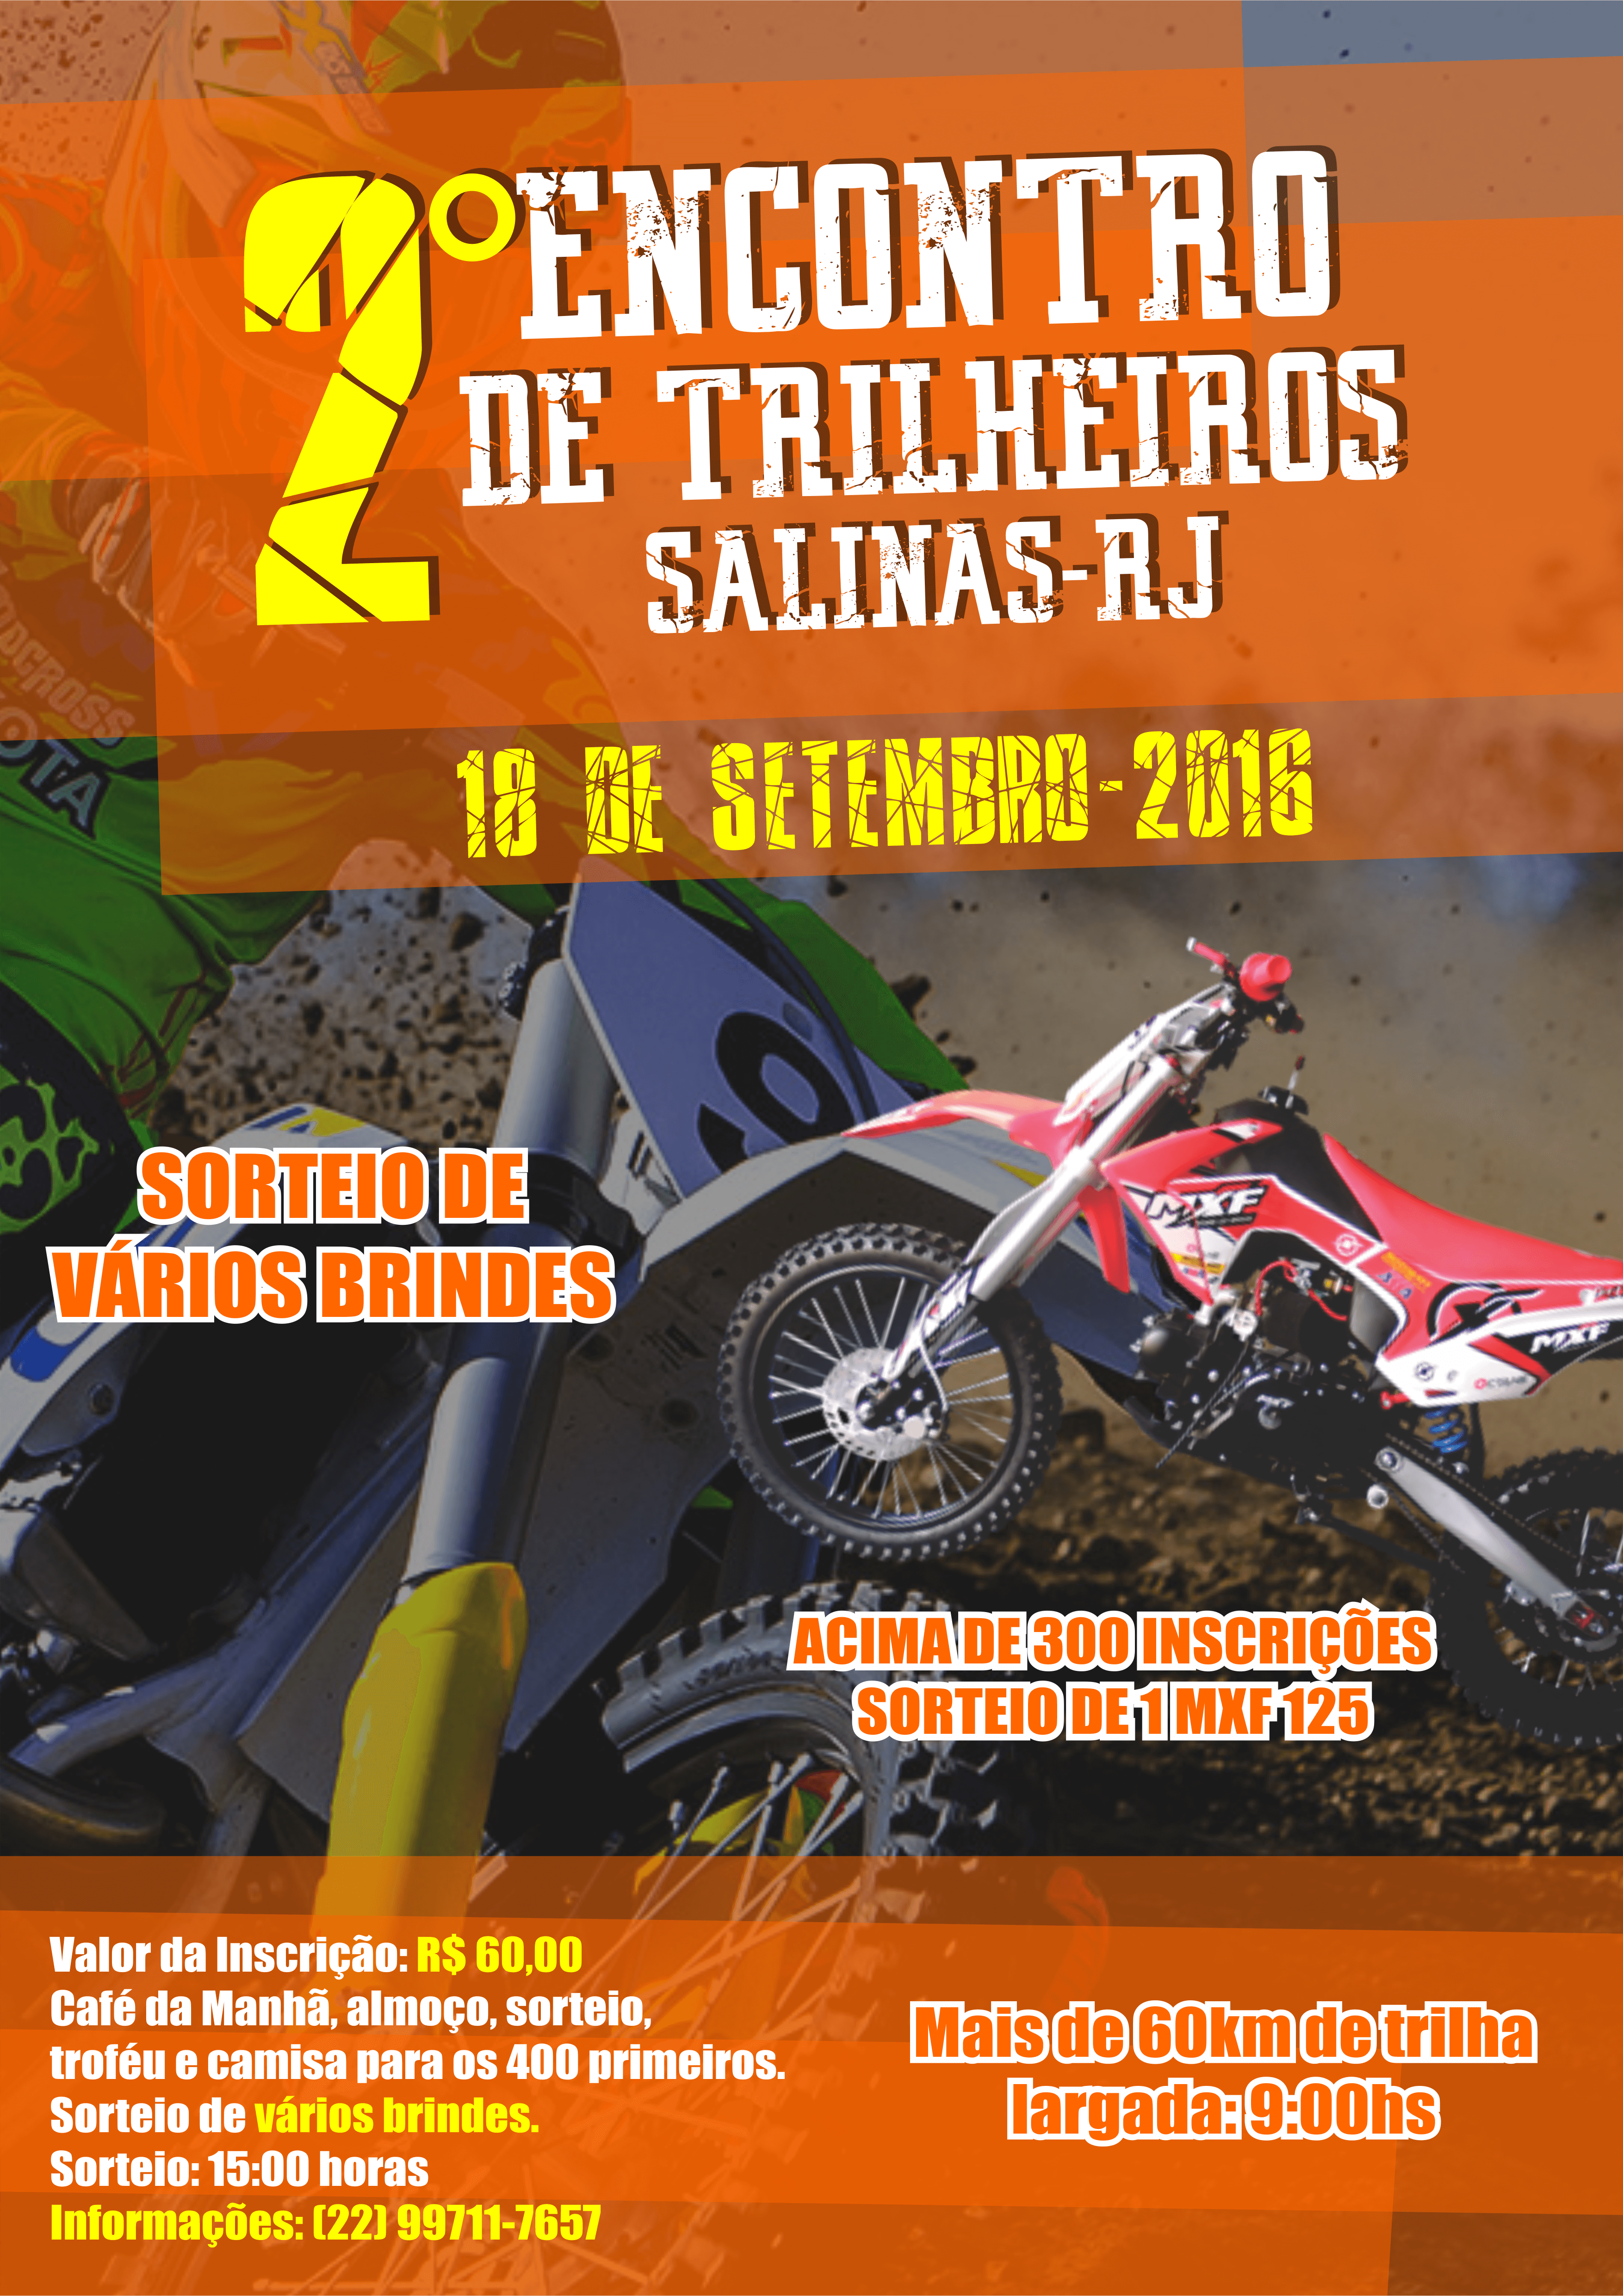 2 ENCONTRO DE TRILHEIROS SALINAS